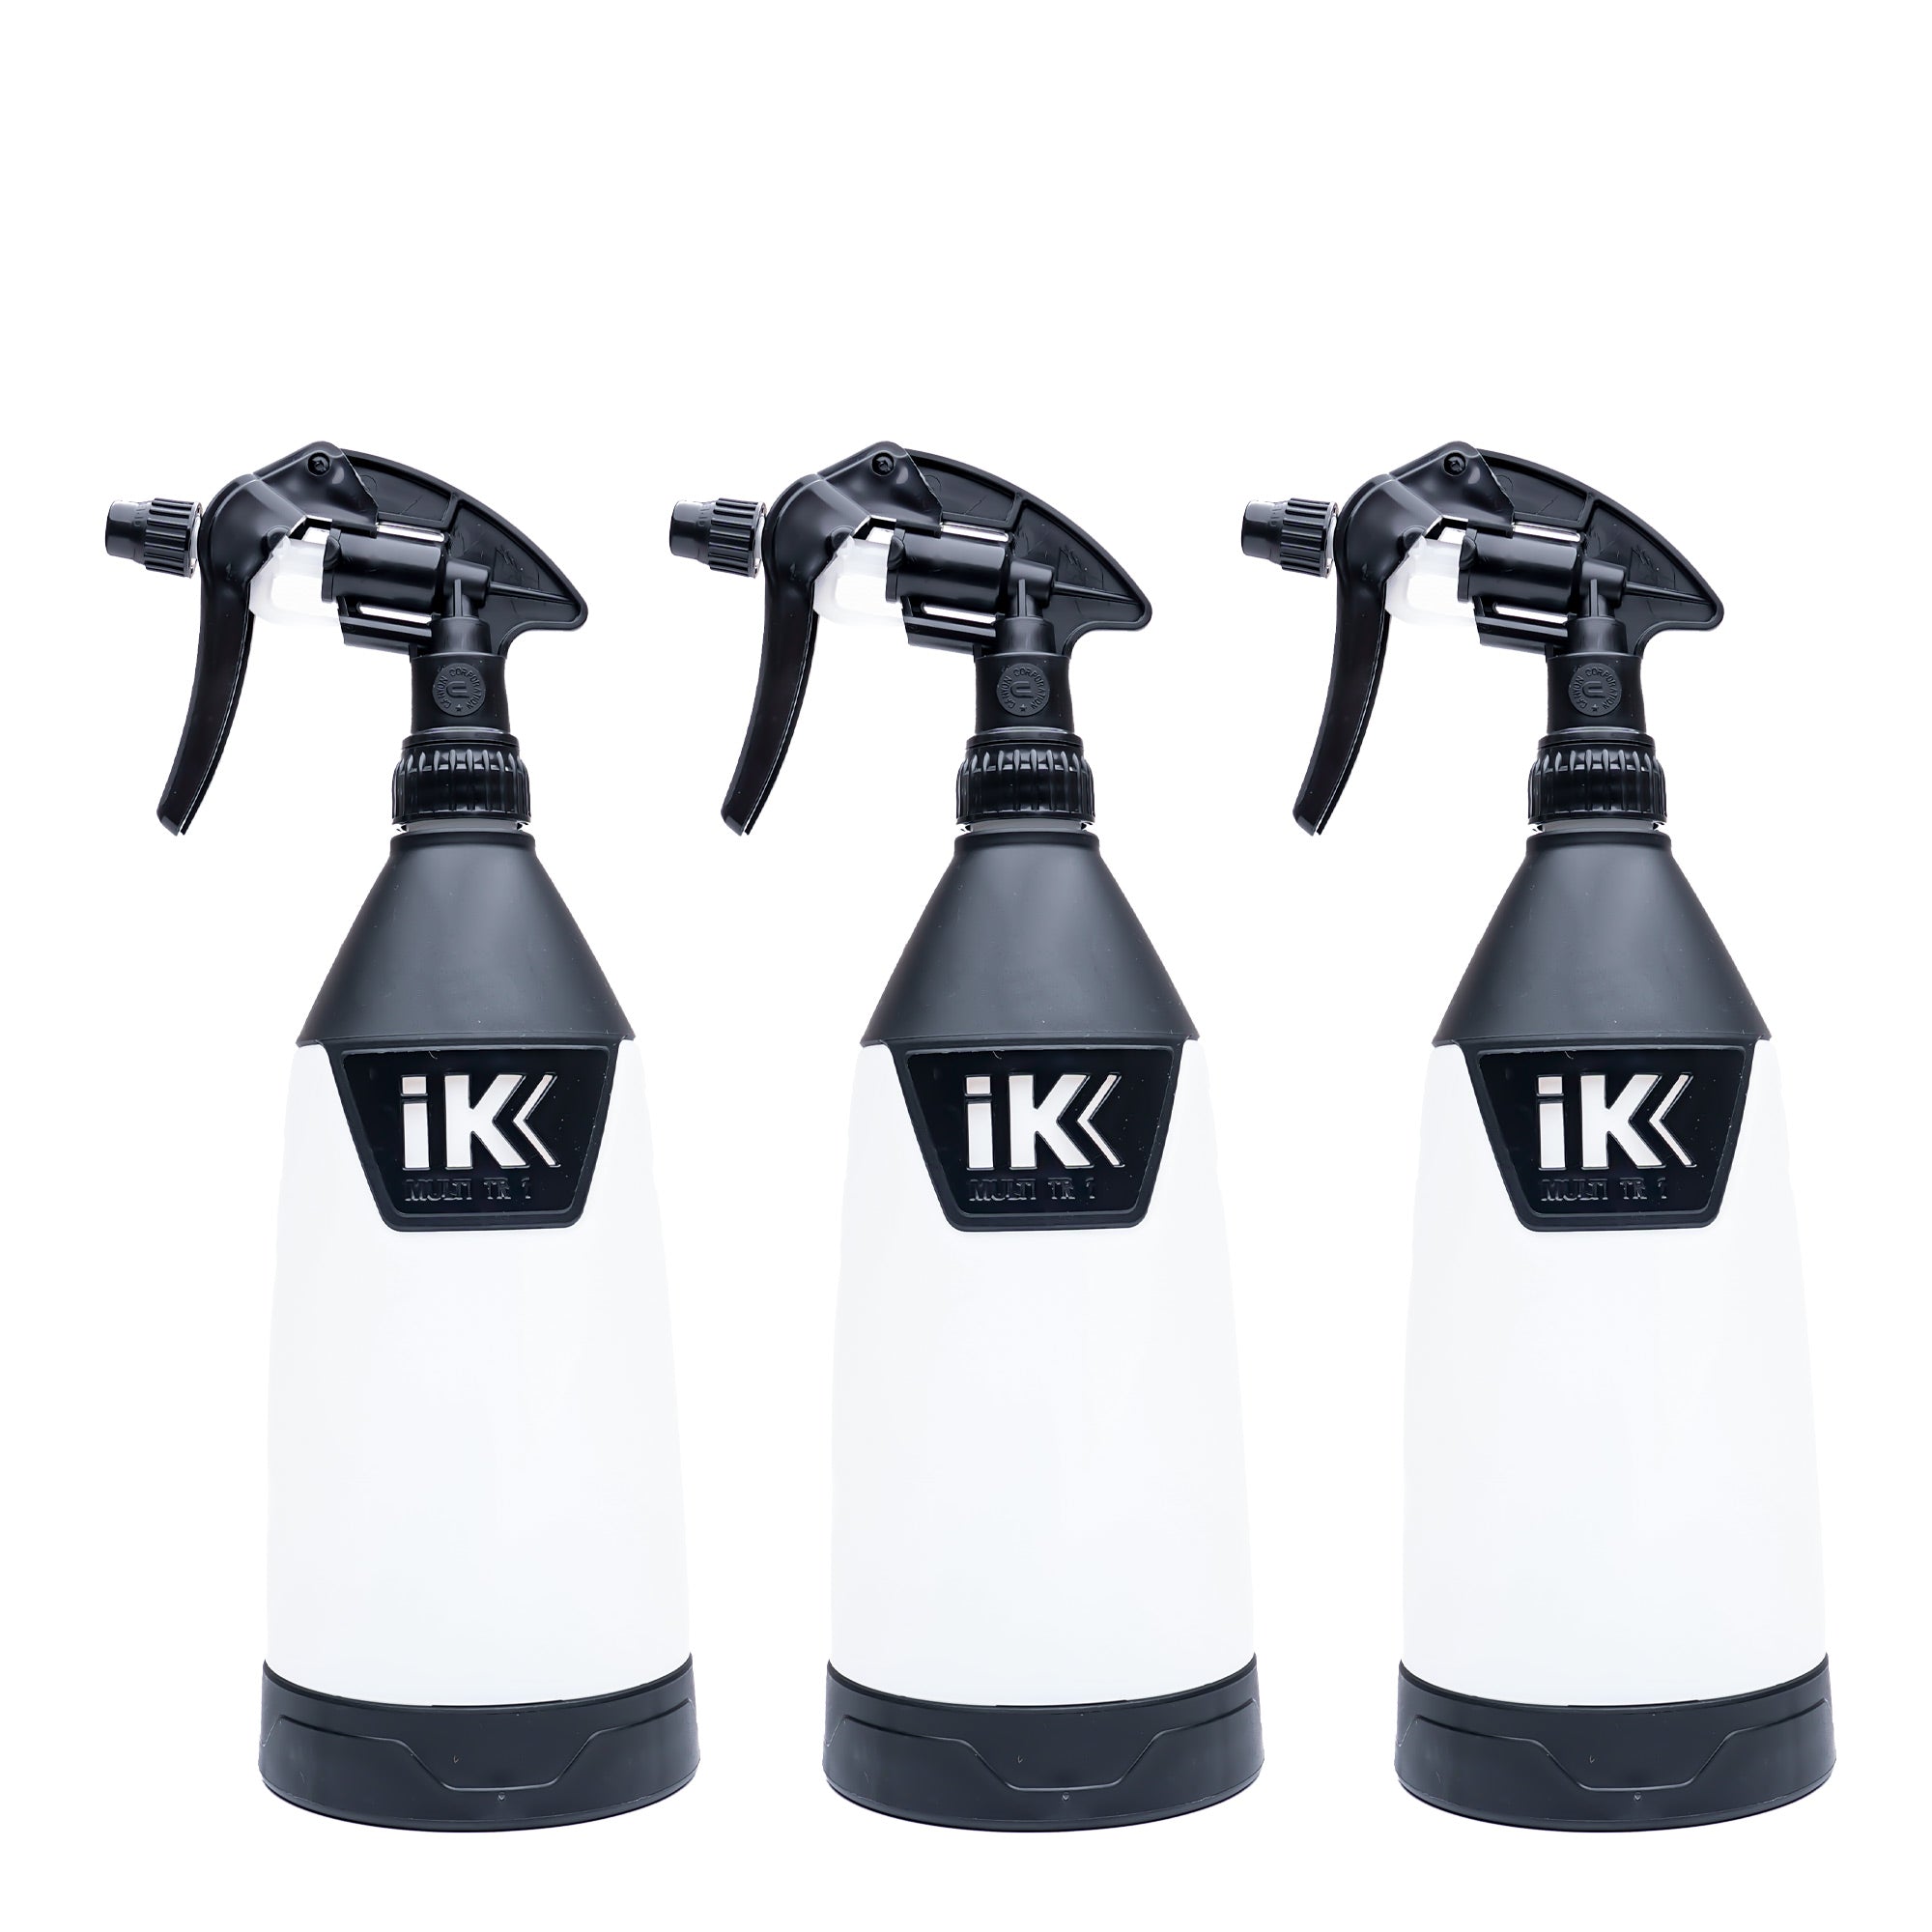 IK TR 1 Back Labels – Detailer Supply Co.